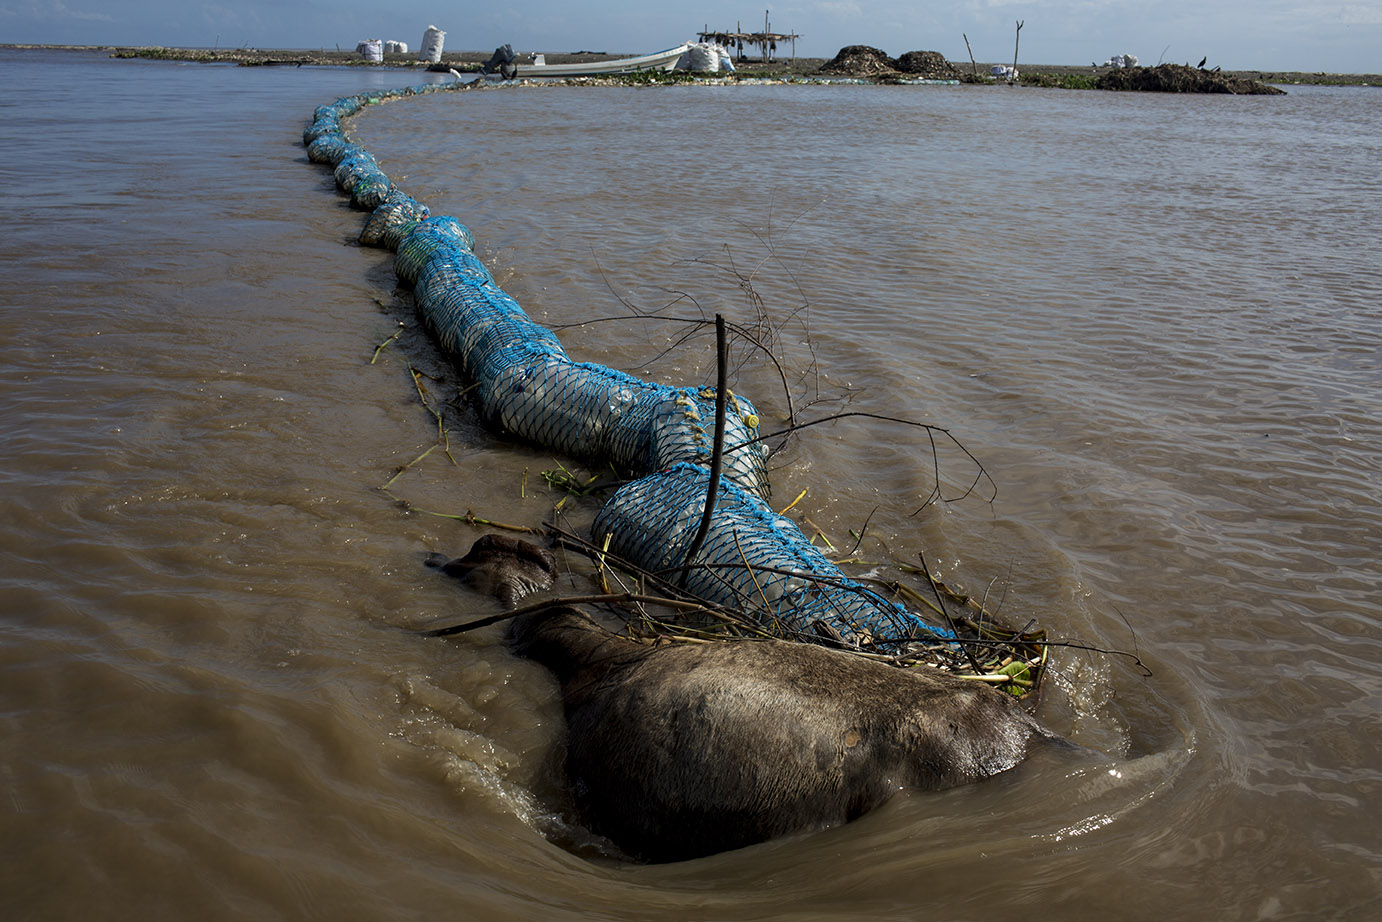 Un chivo ahogado en el río quedó anclado a una barda de contención de basura, en la desembocadura al mar. Simone Dalmasso